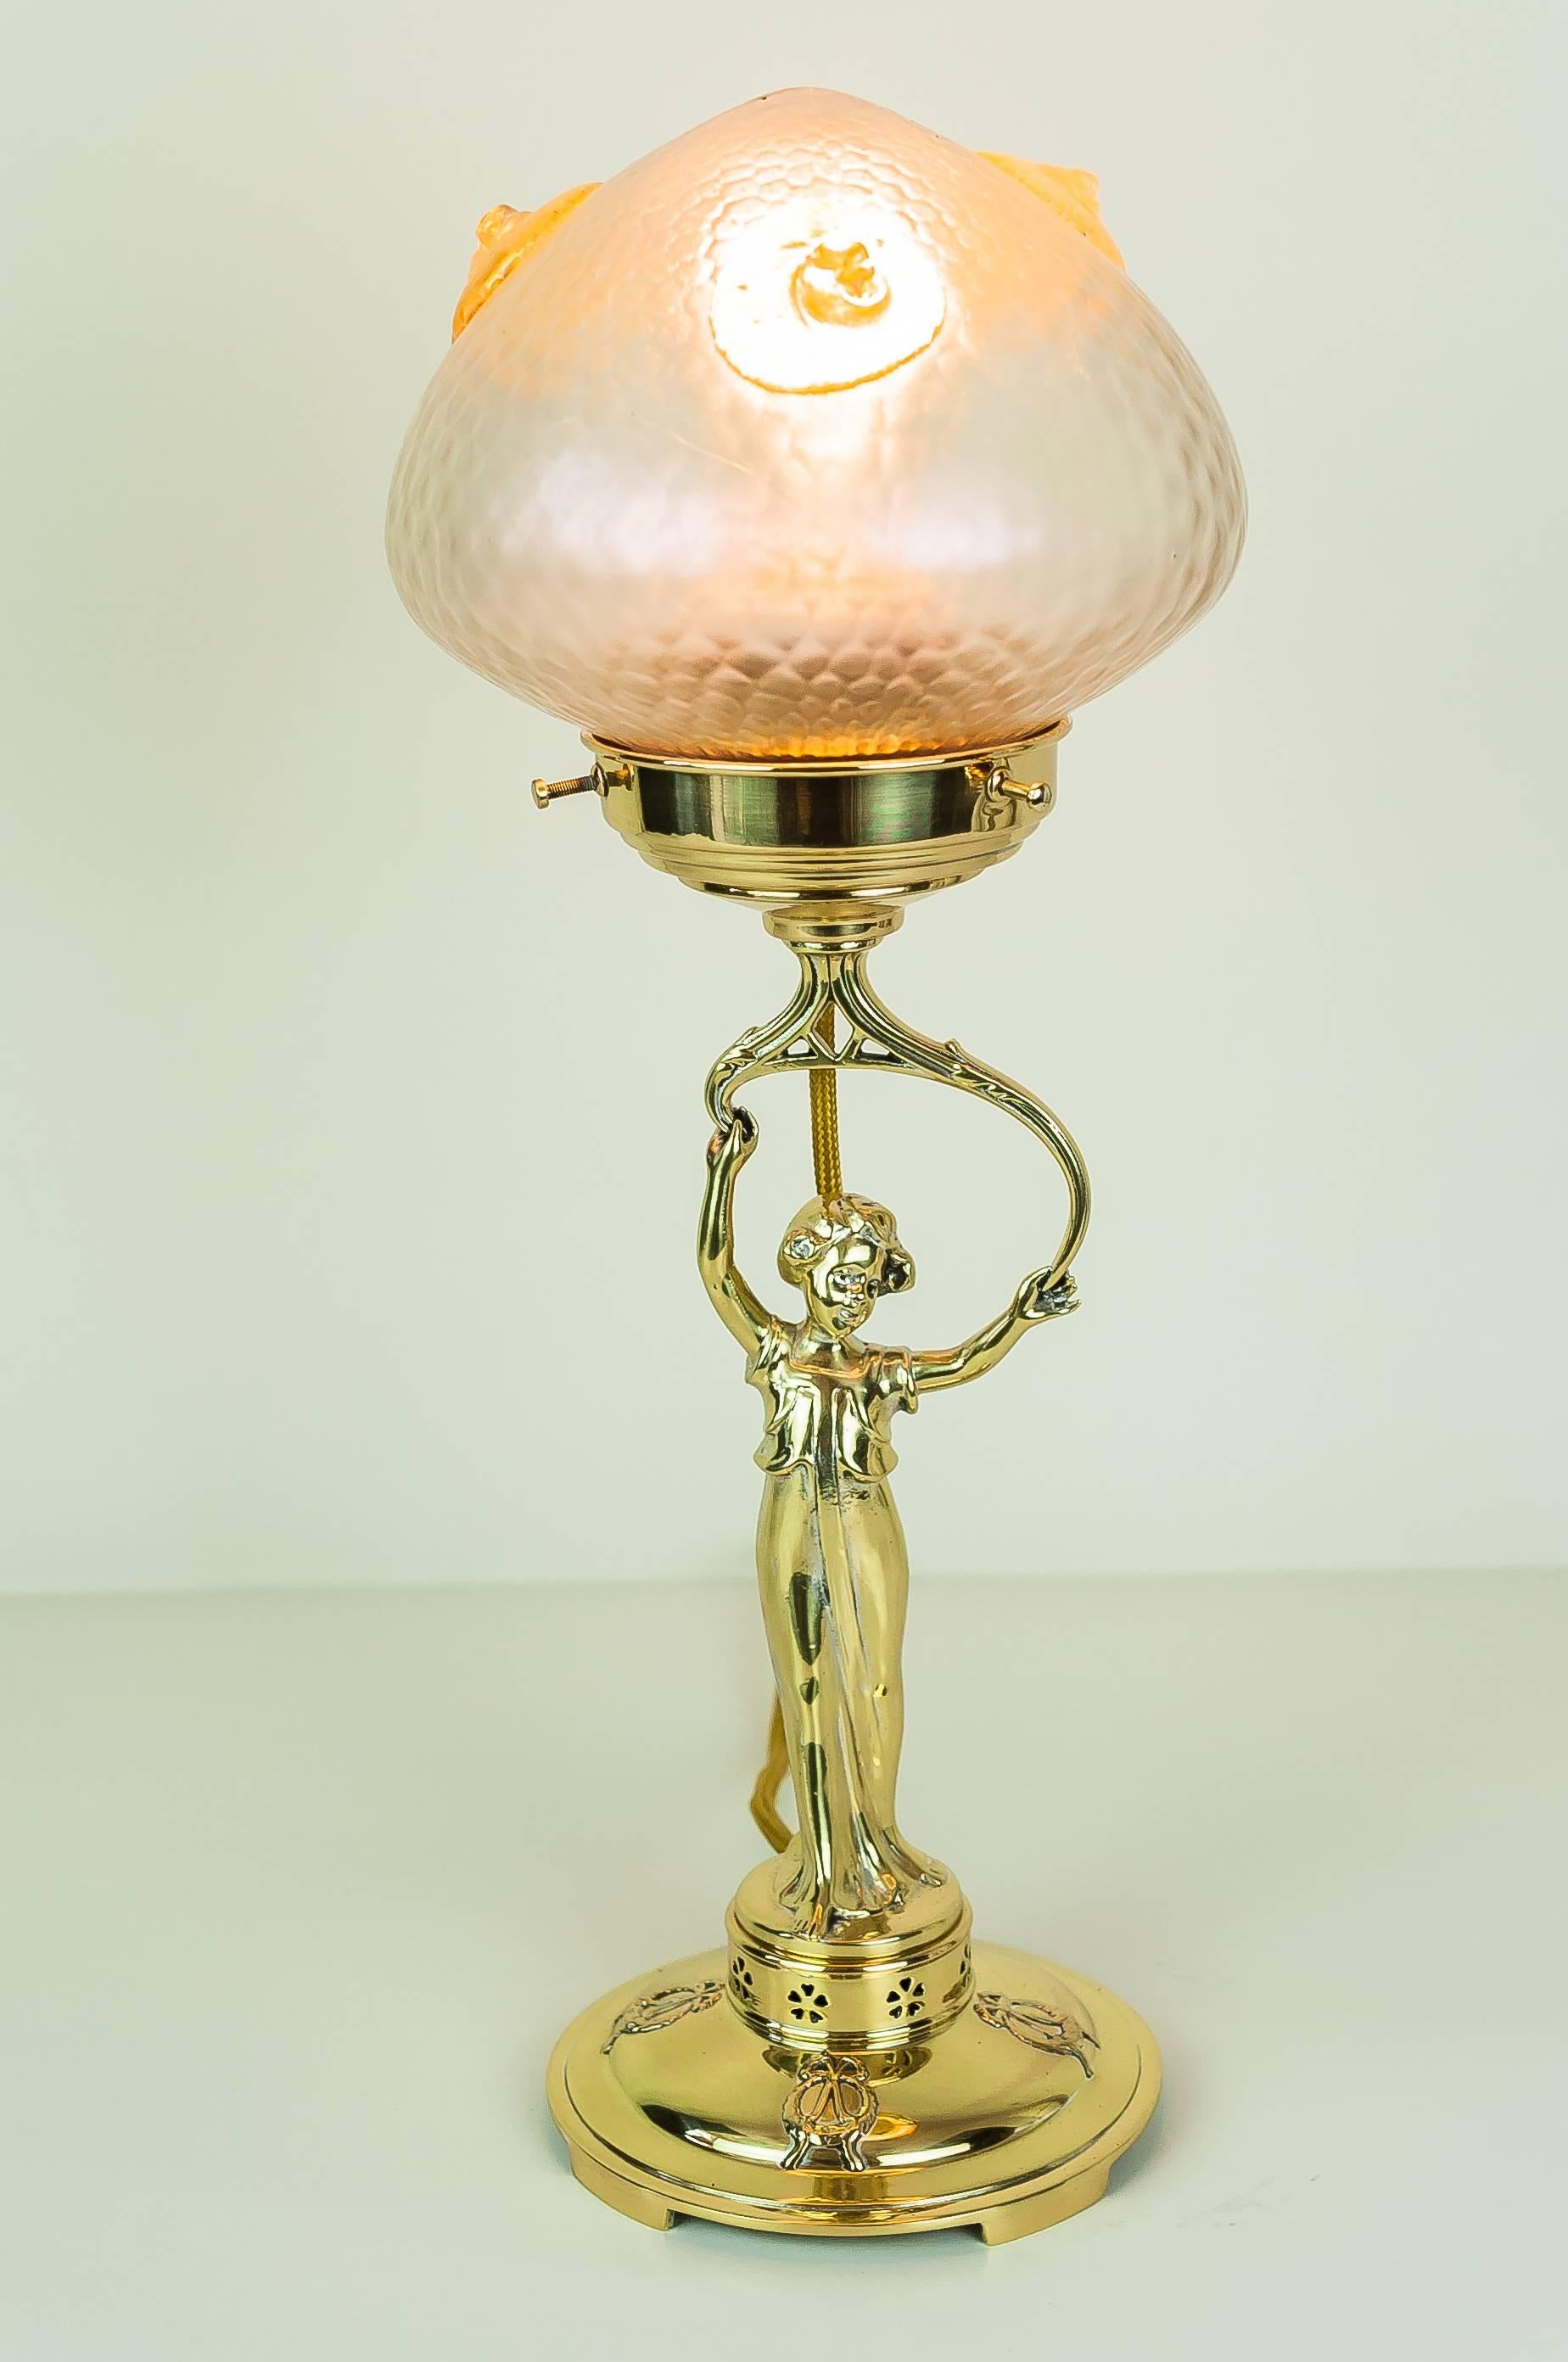 Lampe de table Jugendstil avec abat-jour en verre Loetz
Polis et émaillés au four.